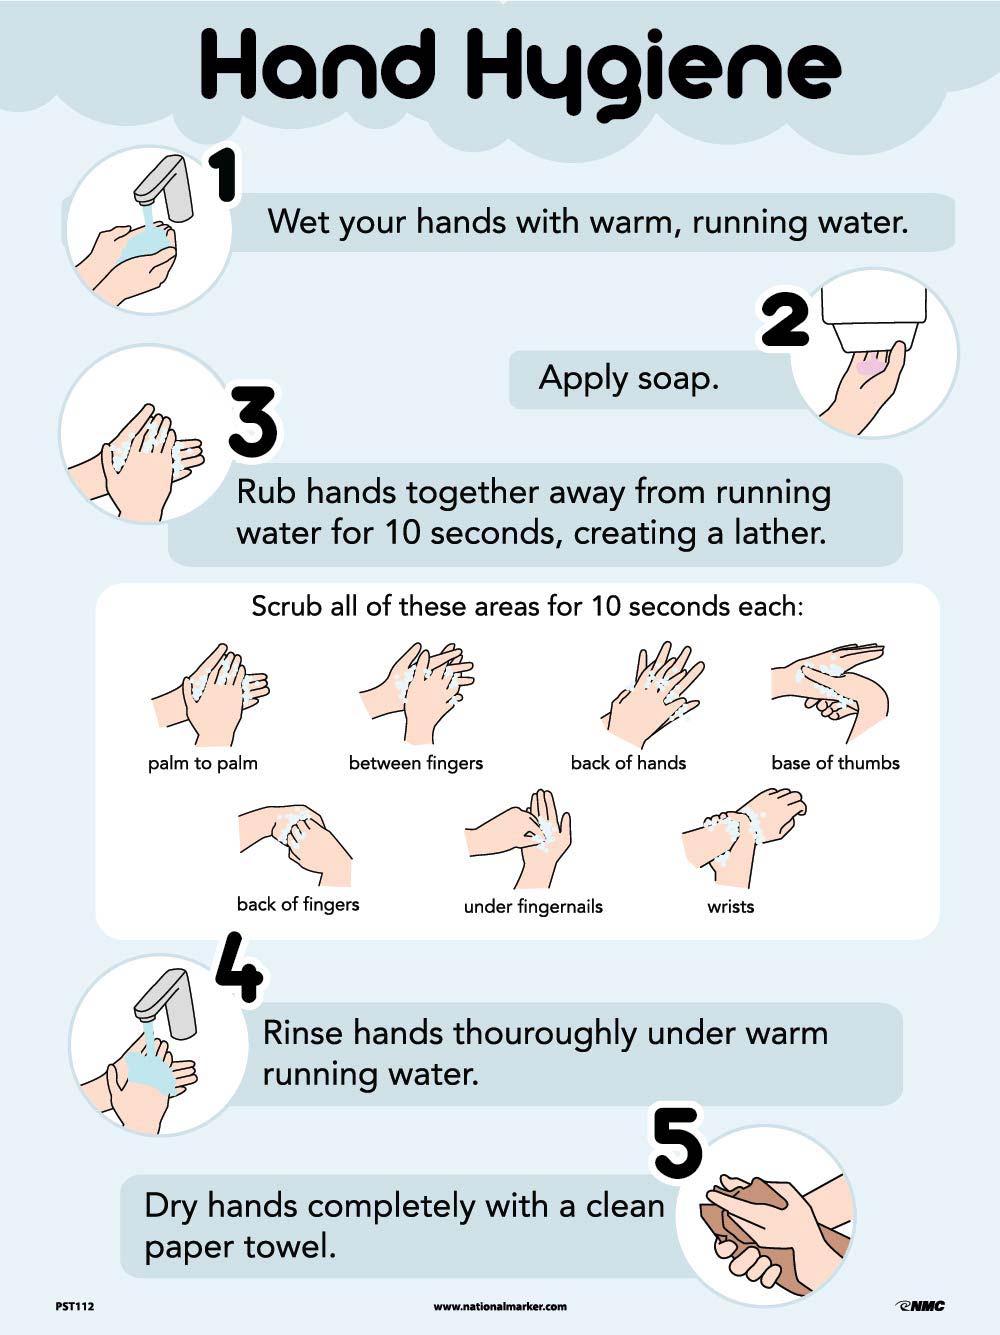 Hand Hygiene Poster-eSafety Supplies, Inc